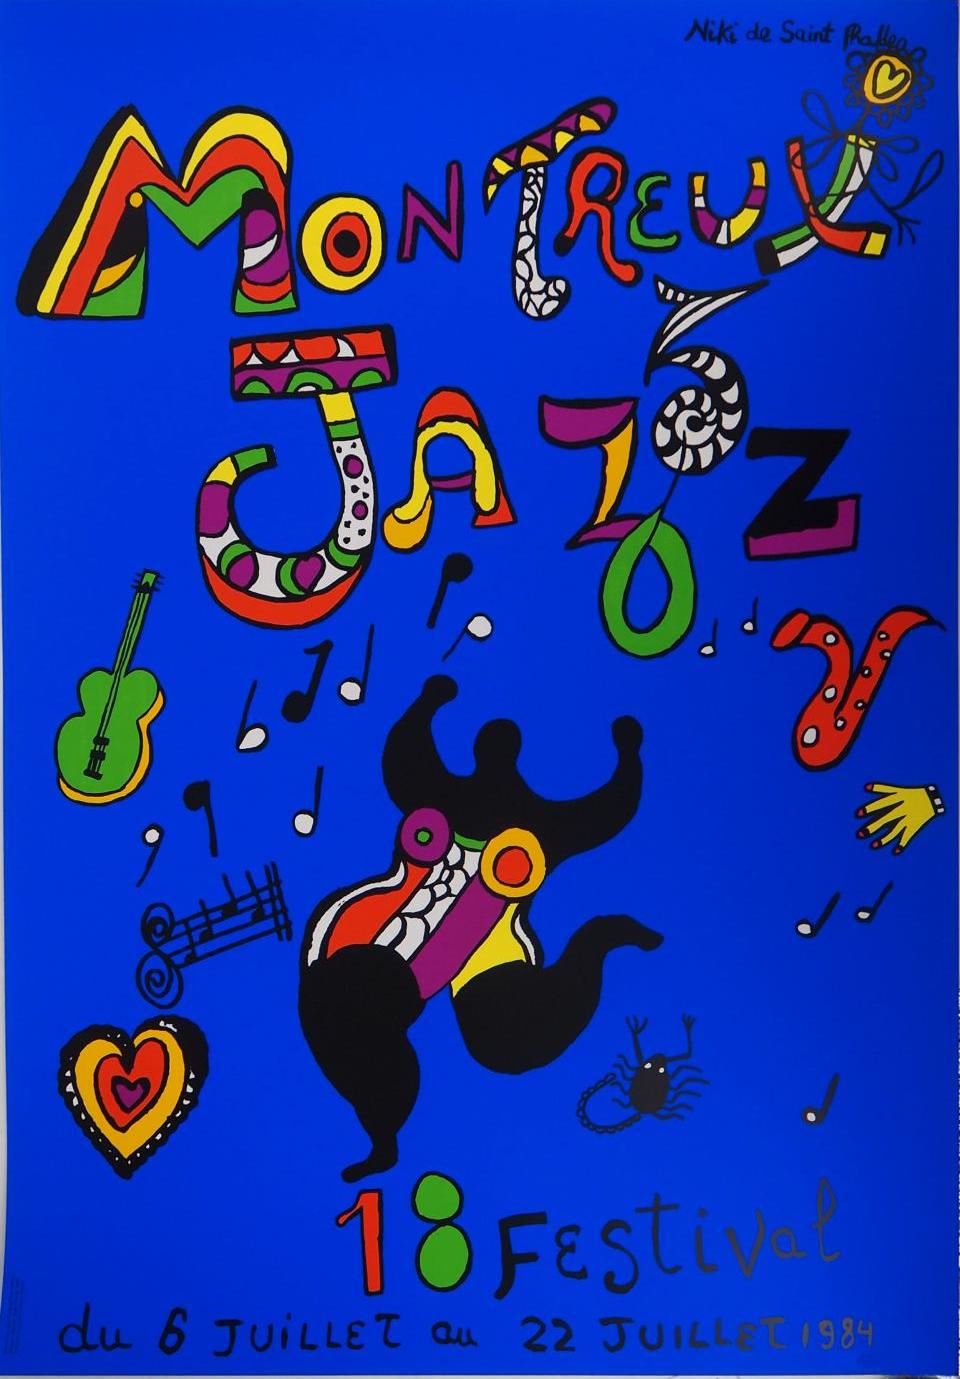 Dancing nana Fan de Jazz ? Cette affiche est faite pour toi. En juillet 1984, le Festival de Jazz de Montreux prend place et fait réaliser ses affiches par les plus grands noms de l’art contemporain. Keith Haring, Andy Warhol, Combas, Jean Tinguely, époux de Niki et elle-même, signent parmi les plus belles affiches de la campagne du festival. Mélange singulier de Nana et de couleurs, l’affiche déborde du talent et de la joie communicative de l’artiste. Aujourd’hui, les multiples de Niki de Saint Phalle sont très appréciés des amateurs d’art. Et toi ? Tu as choisi le tien ?